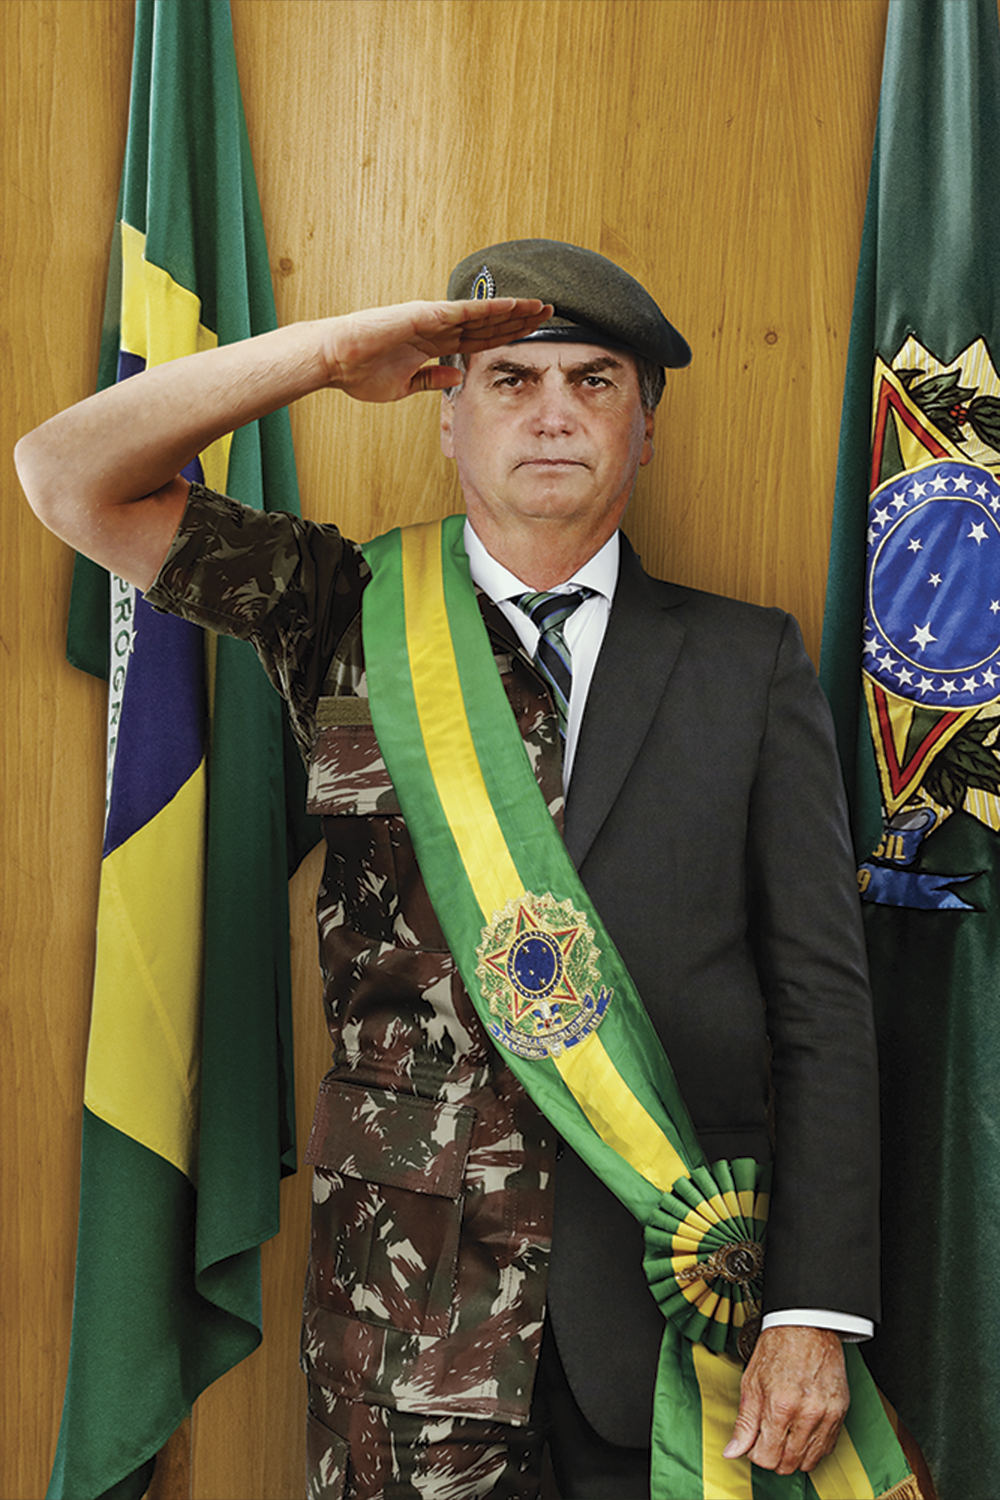 IMAGEM - Bolsonaro: a população o vê mais como militar do que como civil -